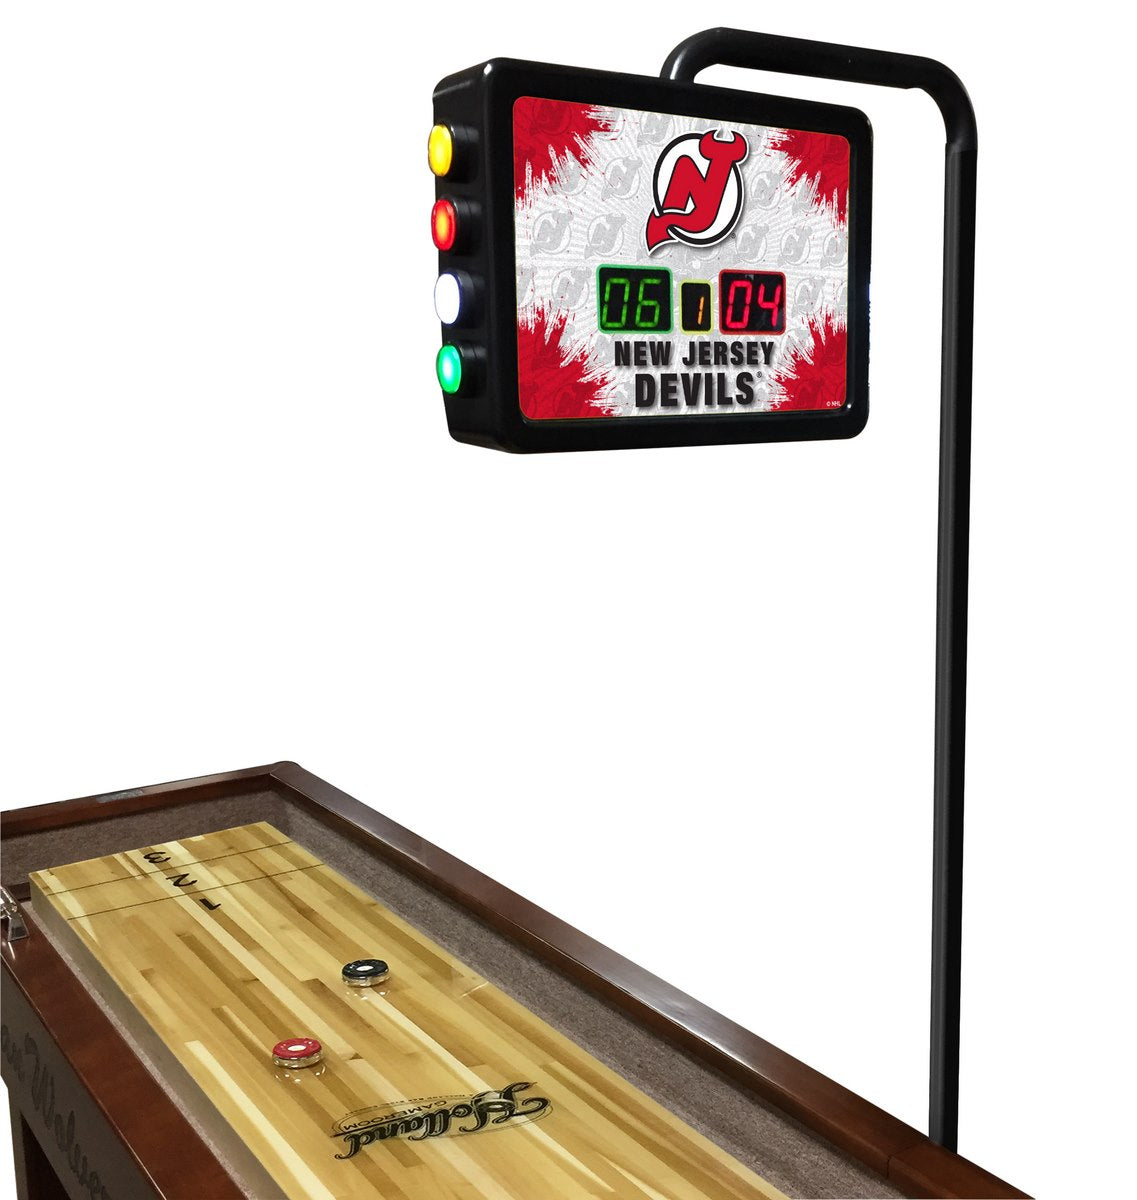 NHL Holland Bar Stool New Jersey Devils 12' Shuffleboard Table w/ Scoreboard